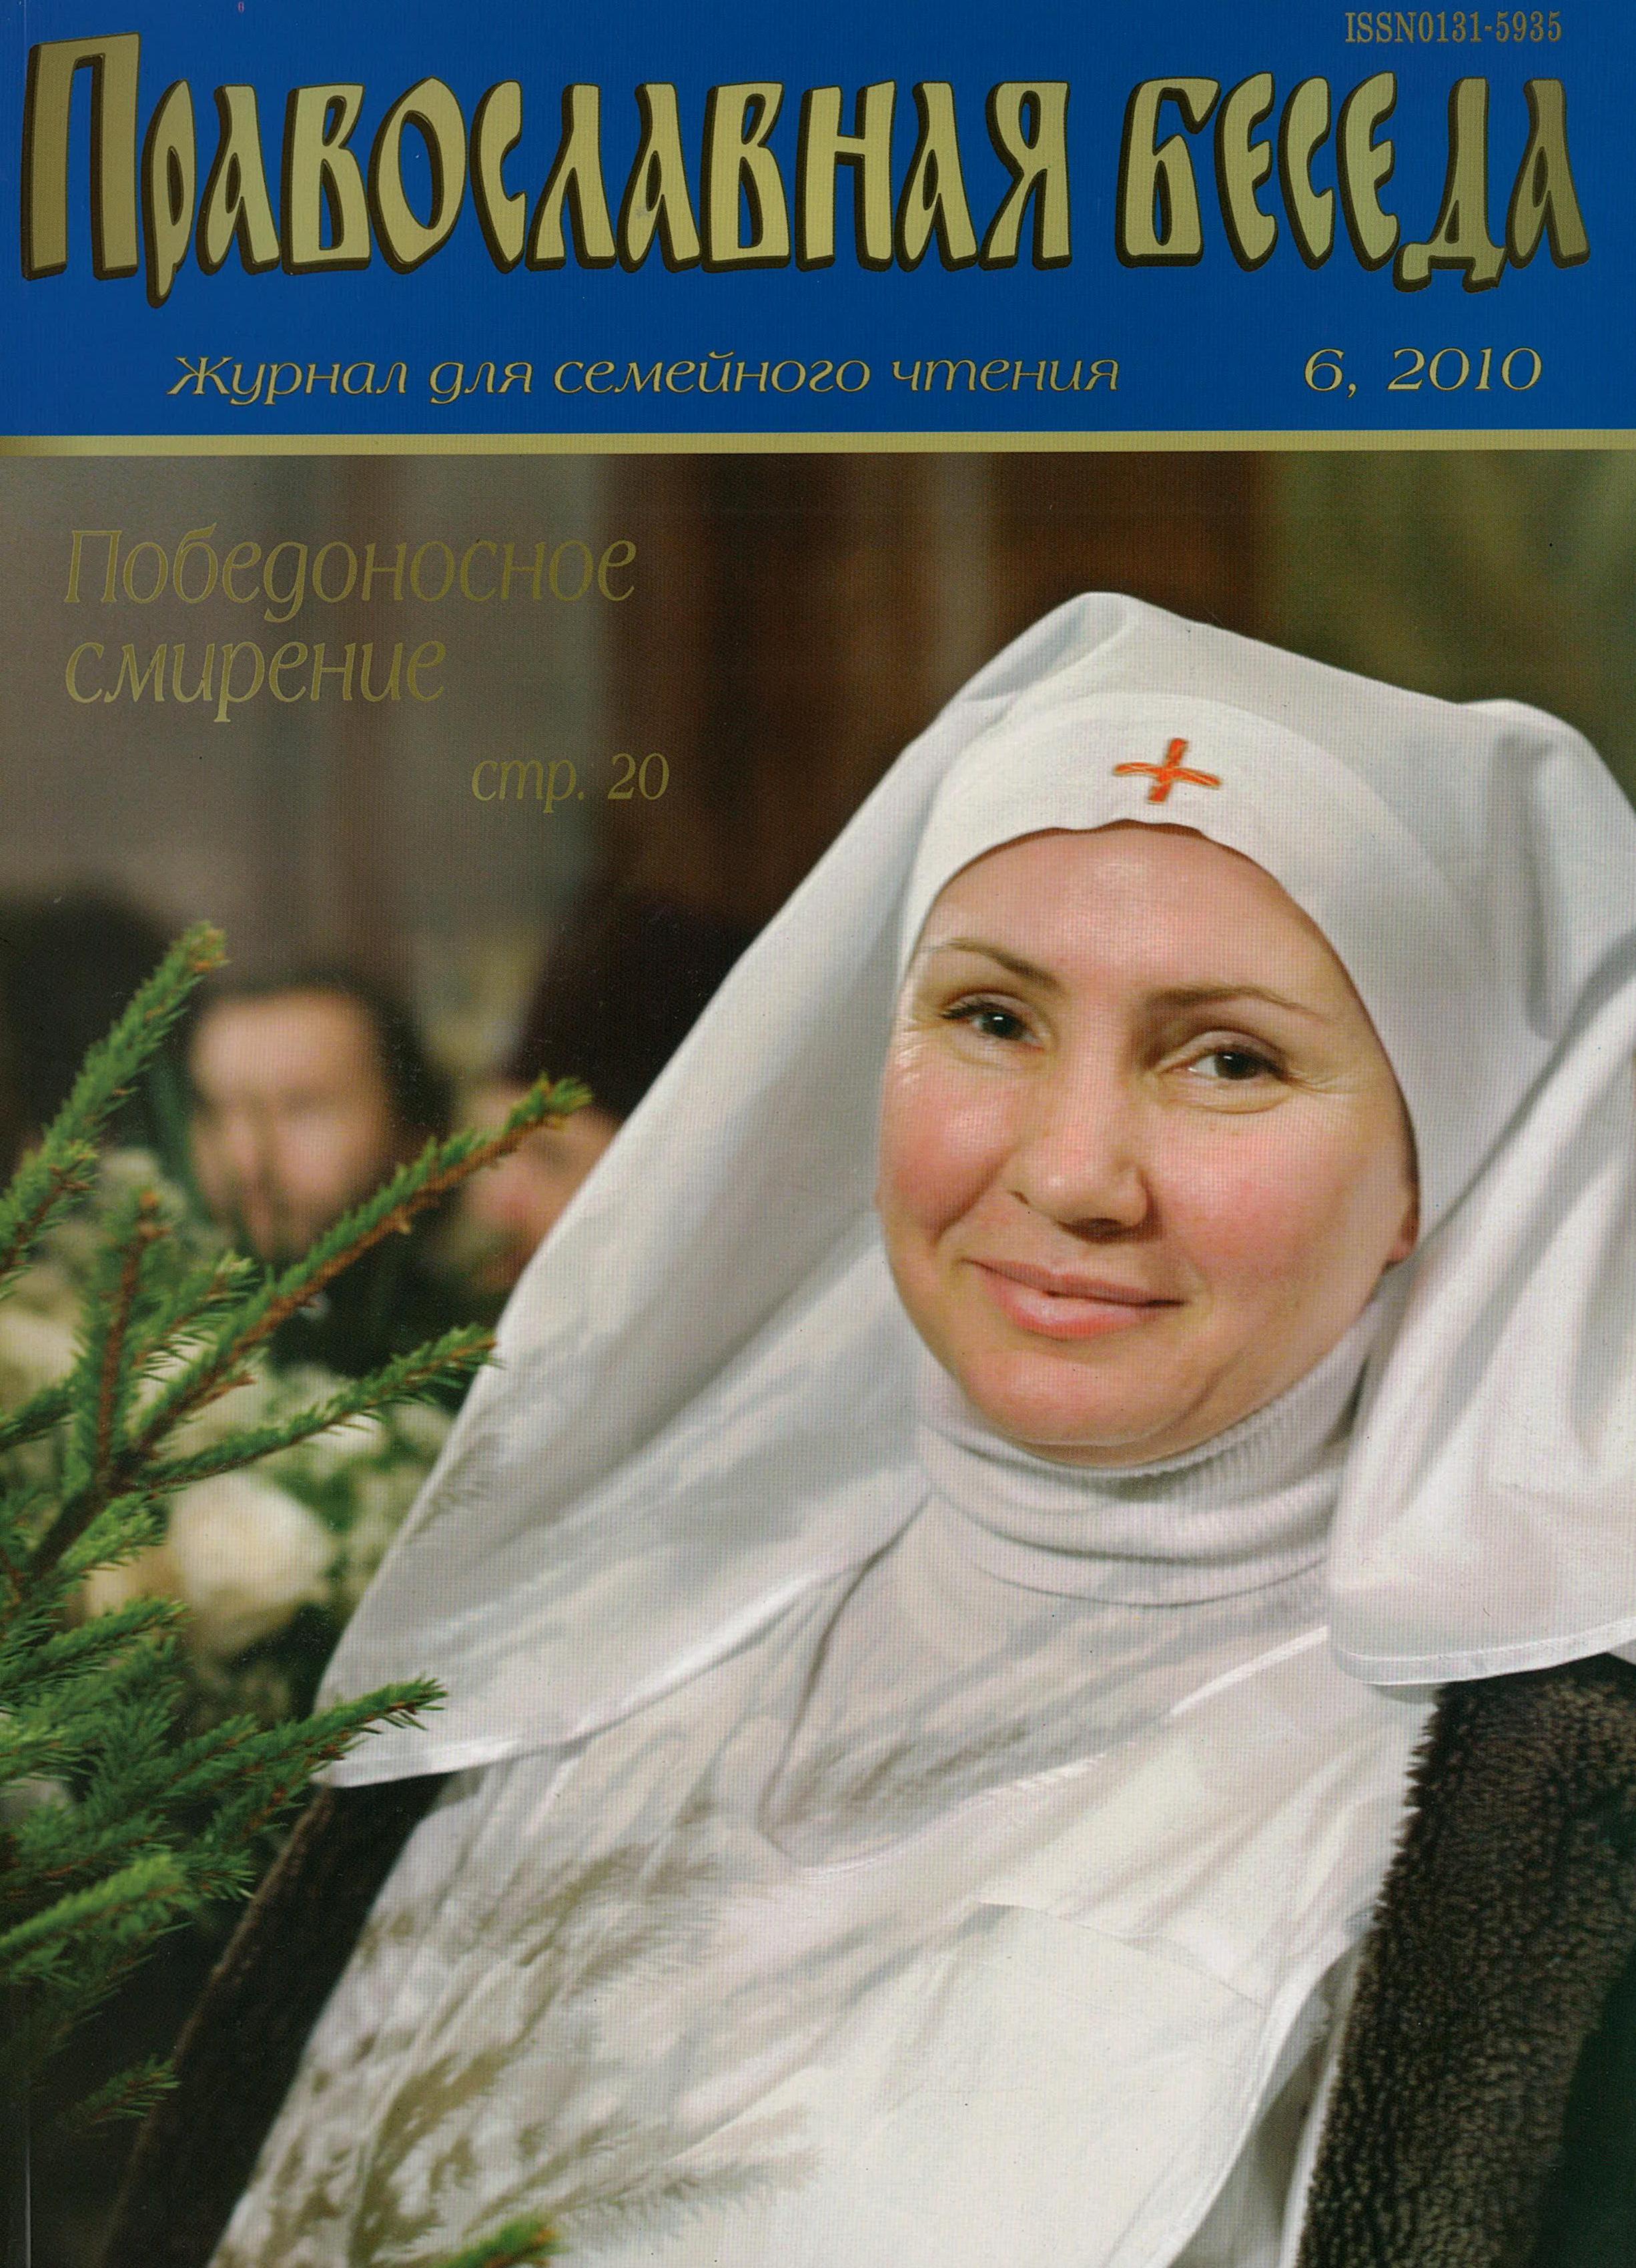 Журнал Православная беседа